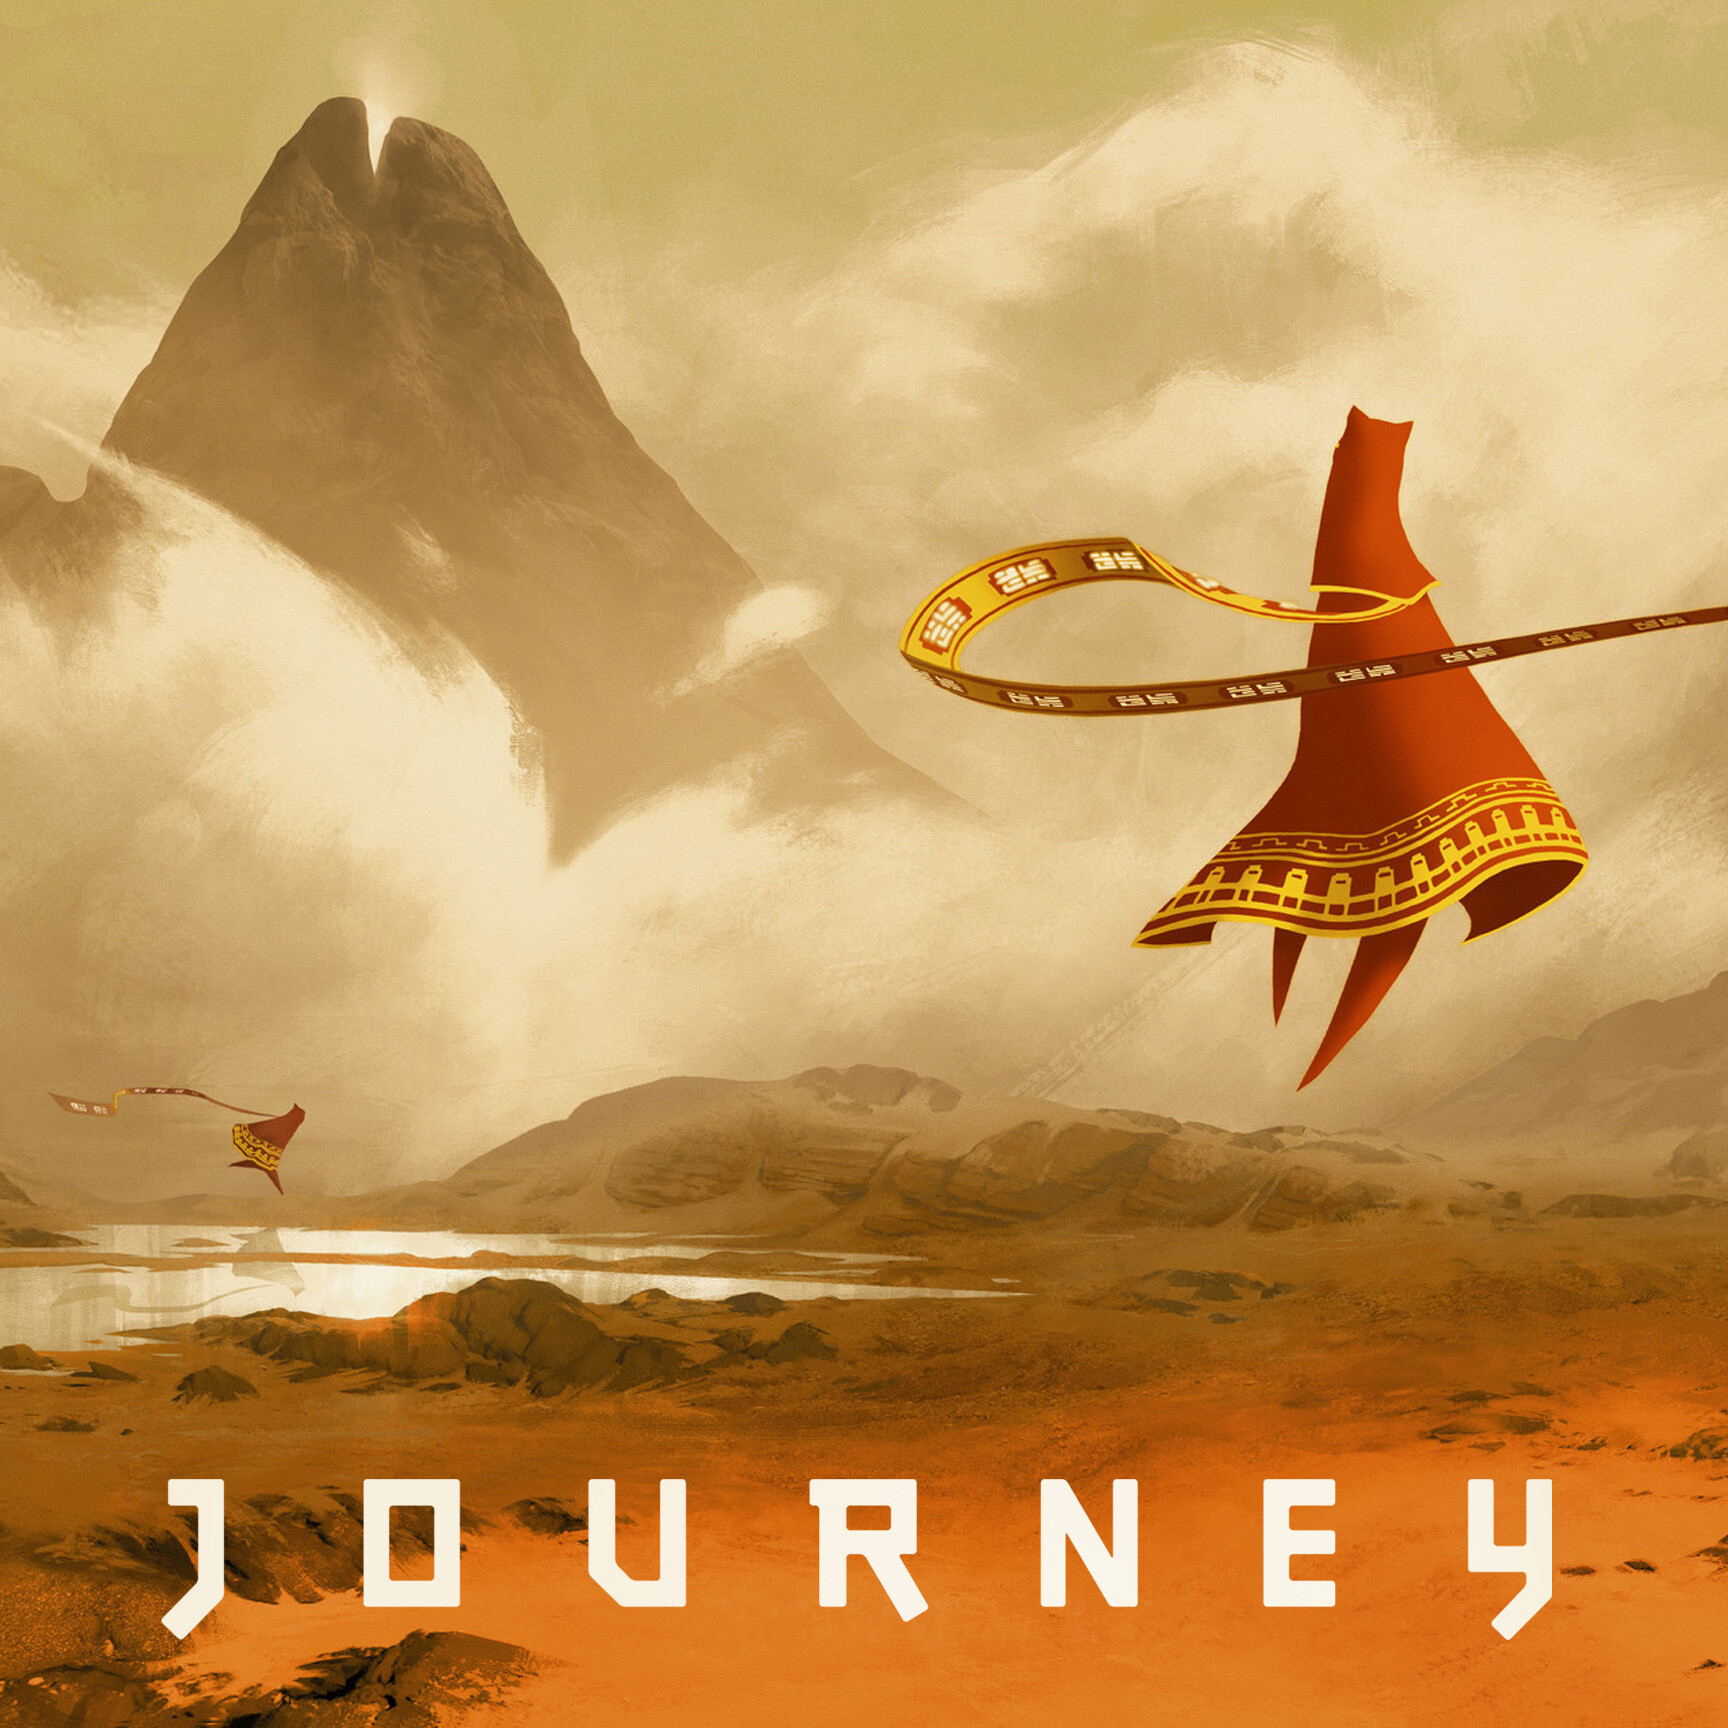 Journey r. Journey (игра, 2012). Journey thatgamecompany. Путешествие игра Journey. Джорни путешествие игра.